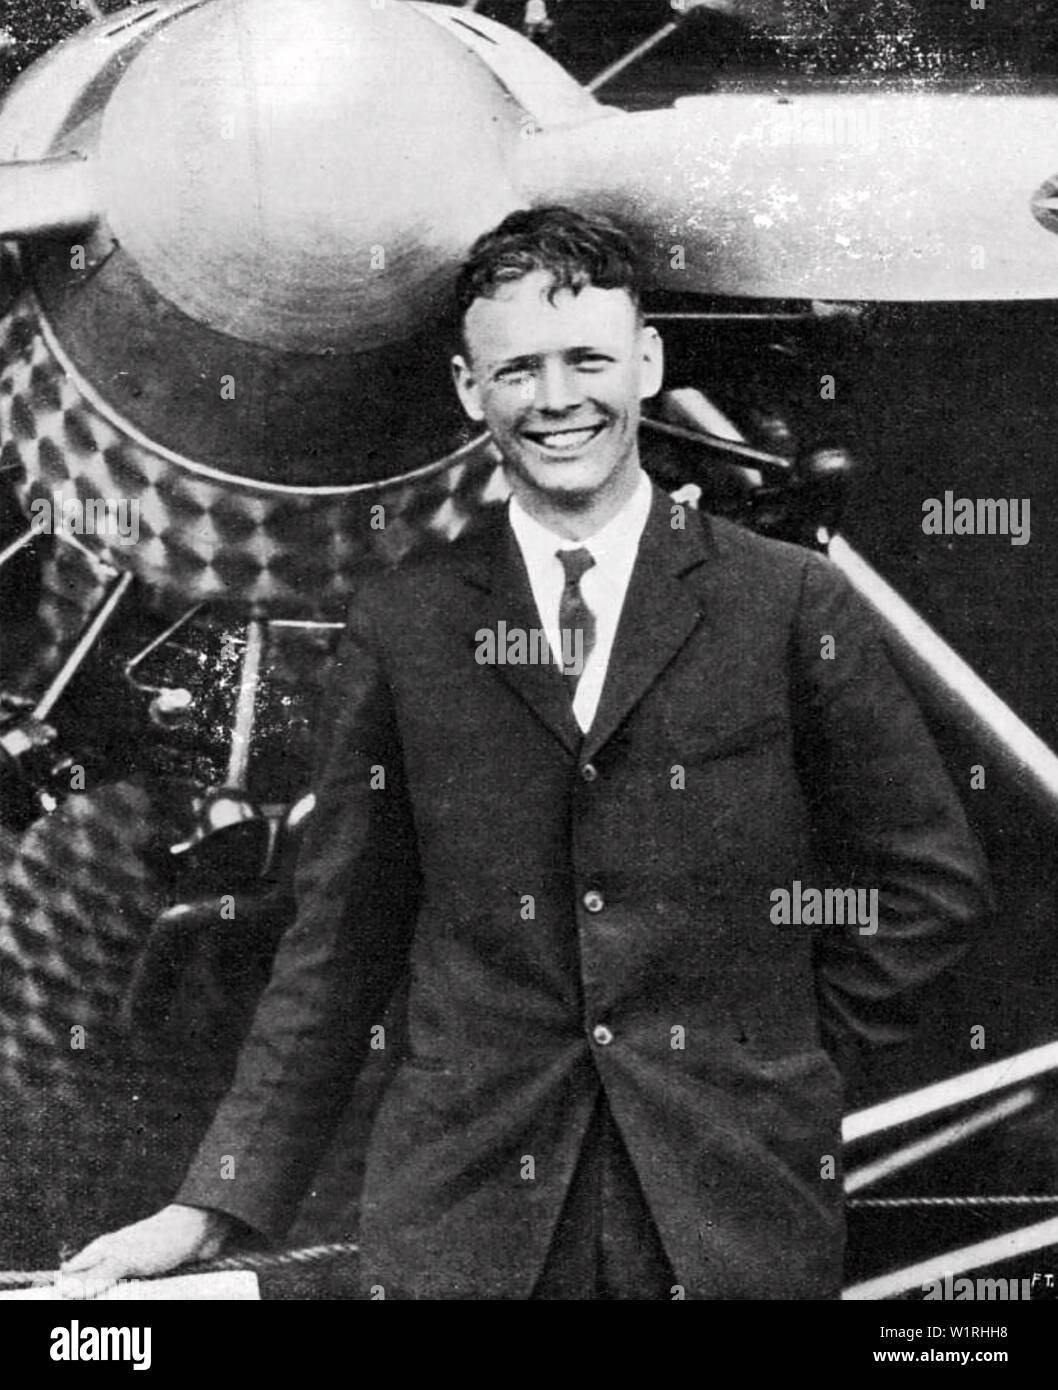 CHARLES LINDBERGH (1902-1974), aviateur américain peu après sa non-stop,solo vol transatlantique en mai 1927 Banque D'Images